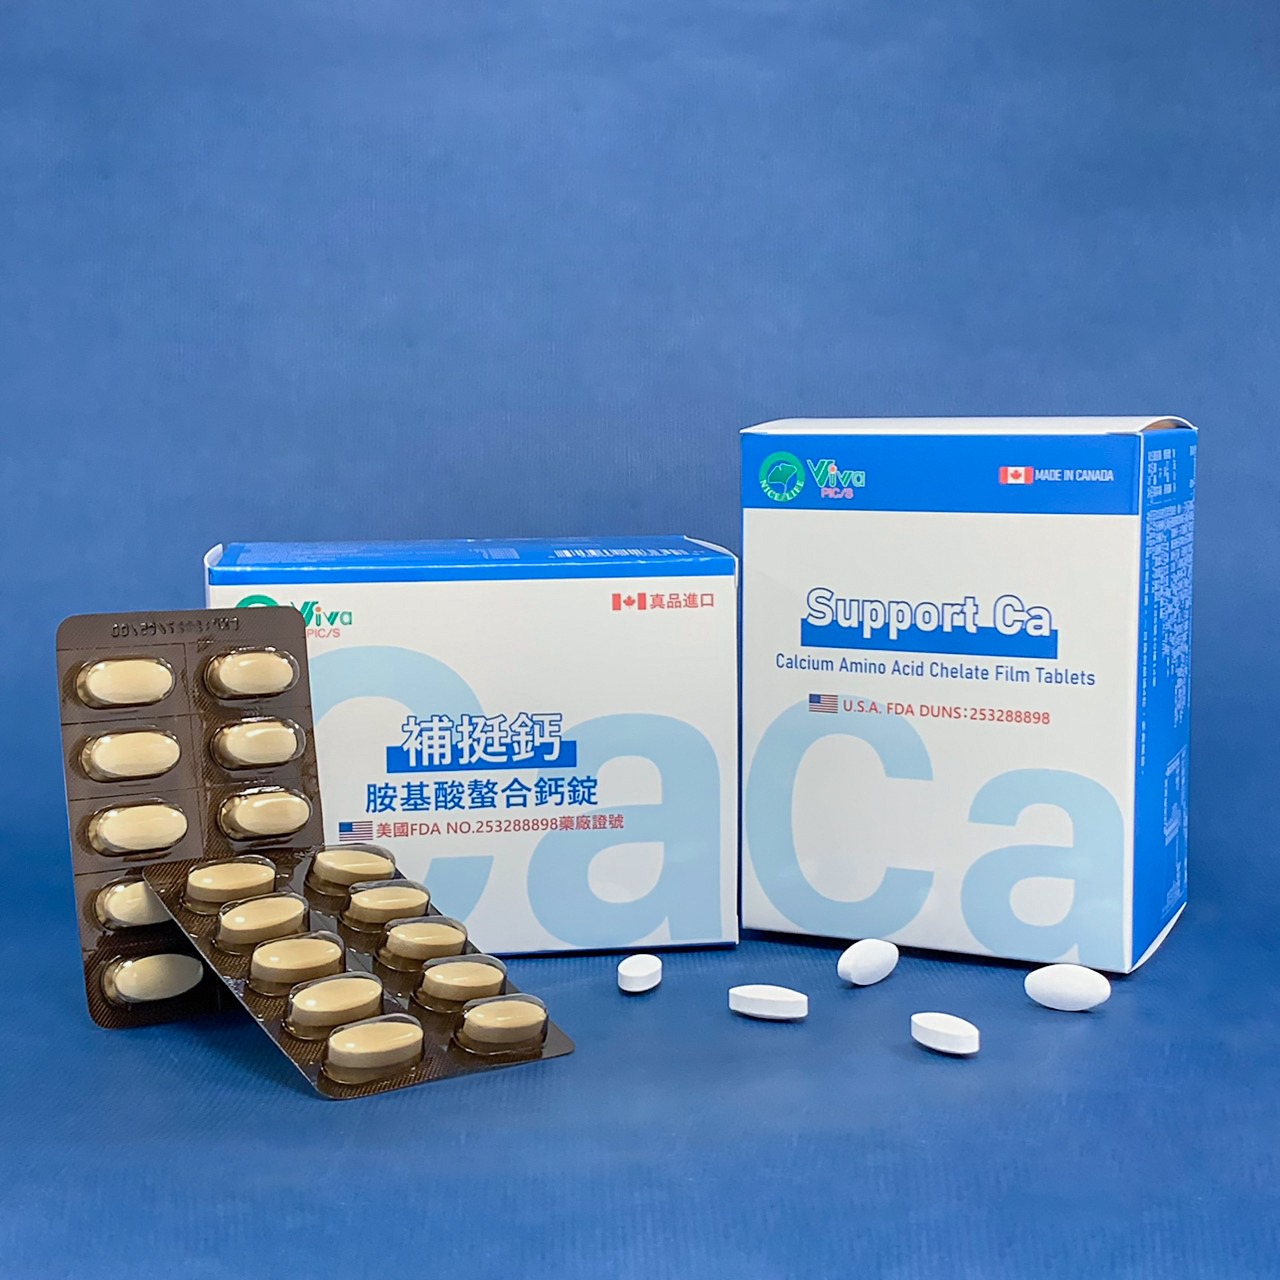 補挺鈣胺基酸螯合鈣　　Support Ca Calcium Amino Acid Chelate Film Tablets